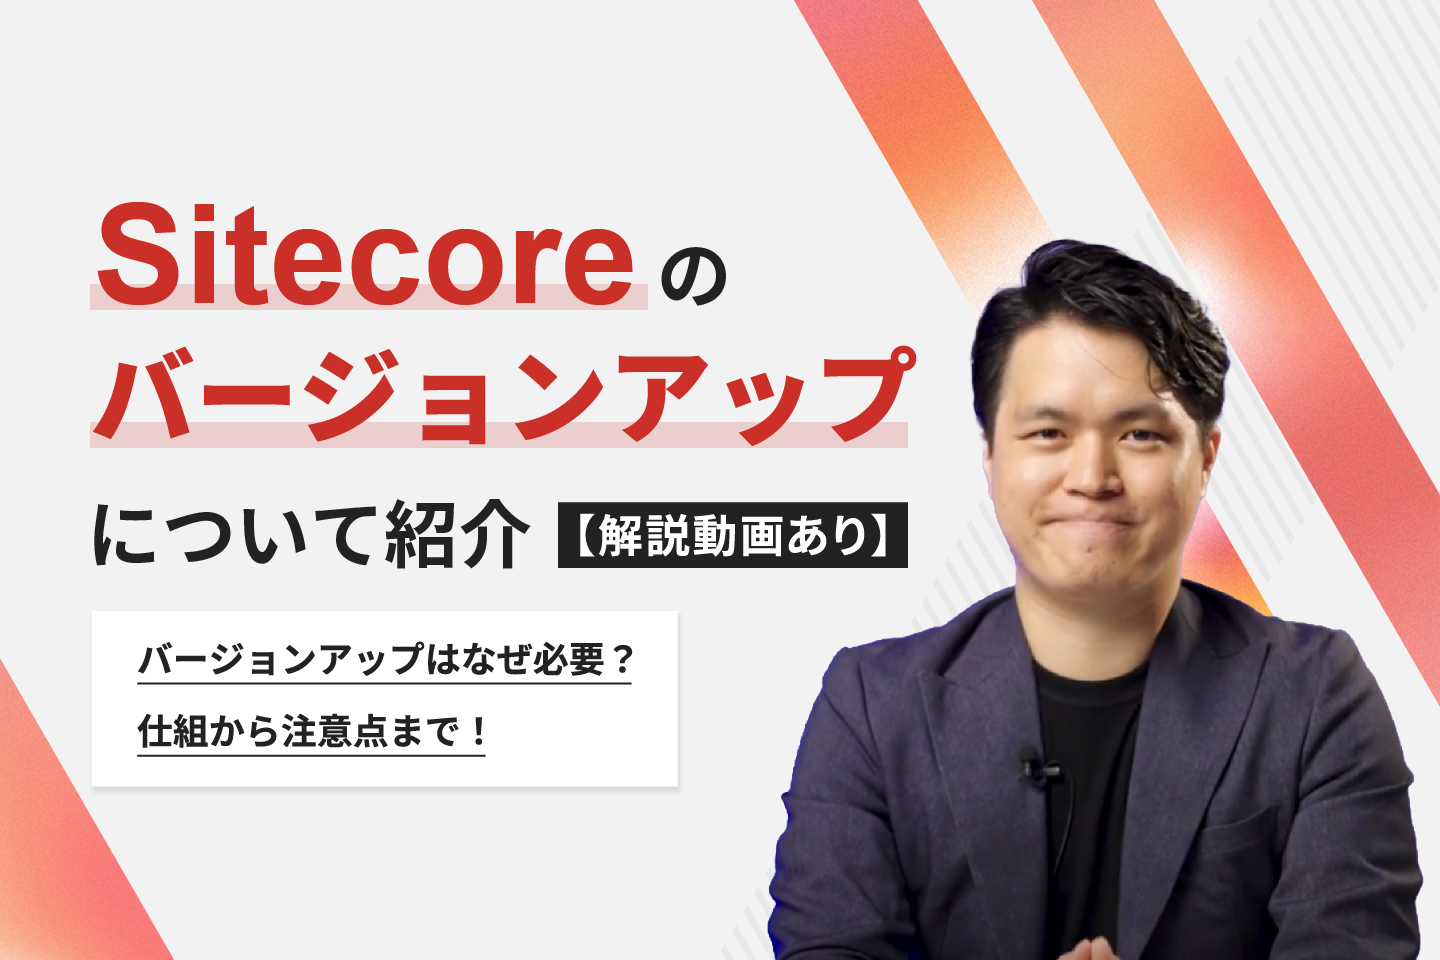 【解説動画あり】Sitecoreのバージョンアップについて紹介